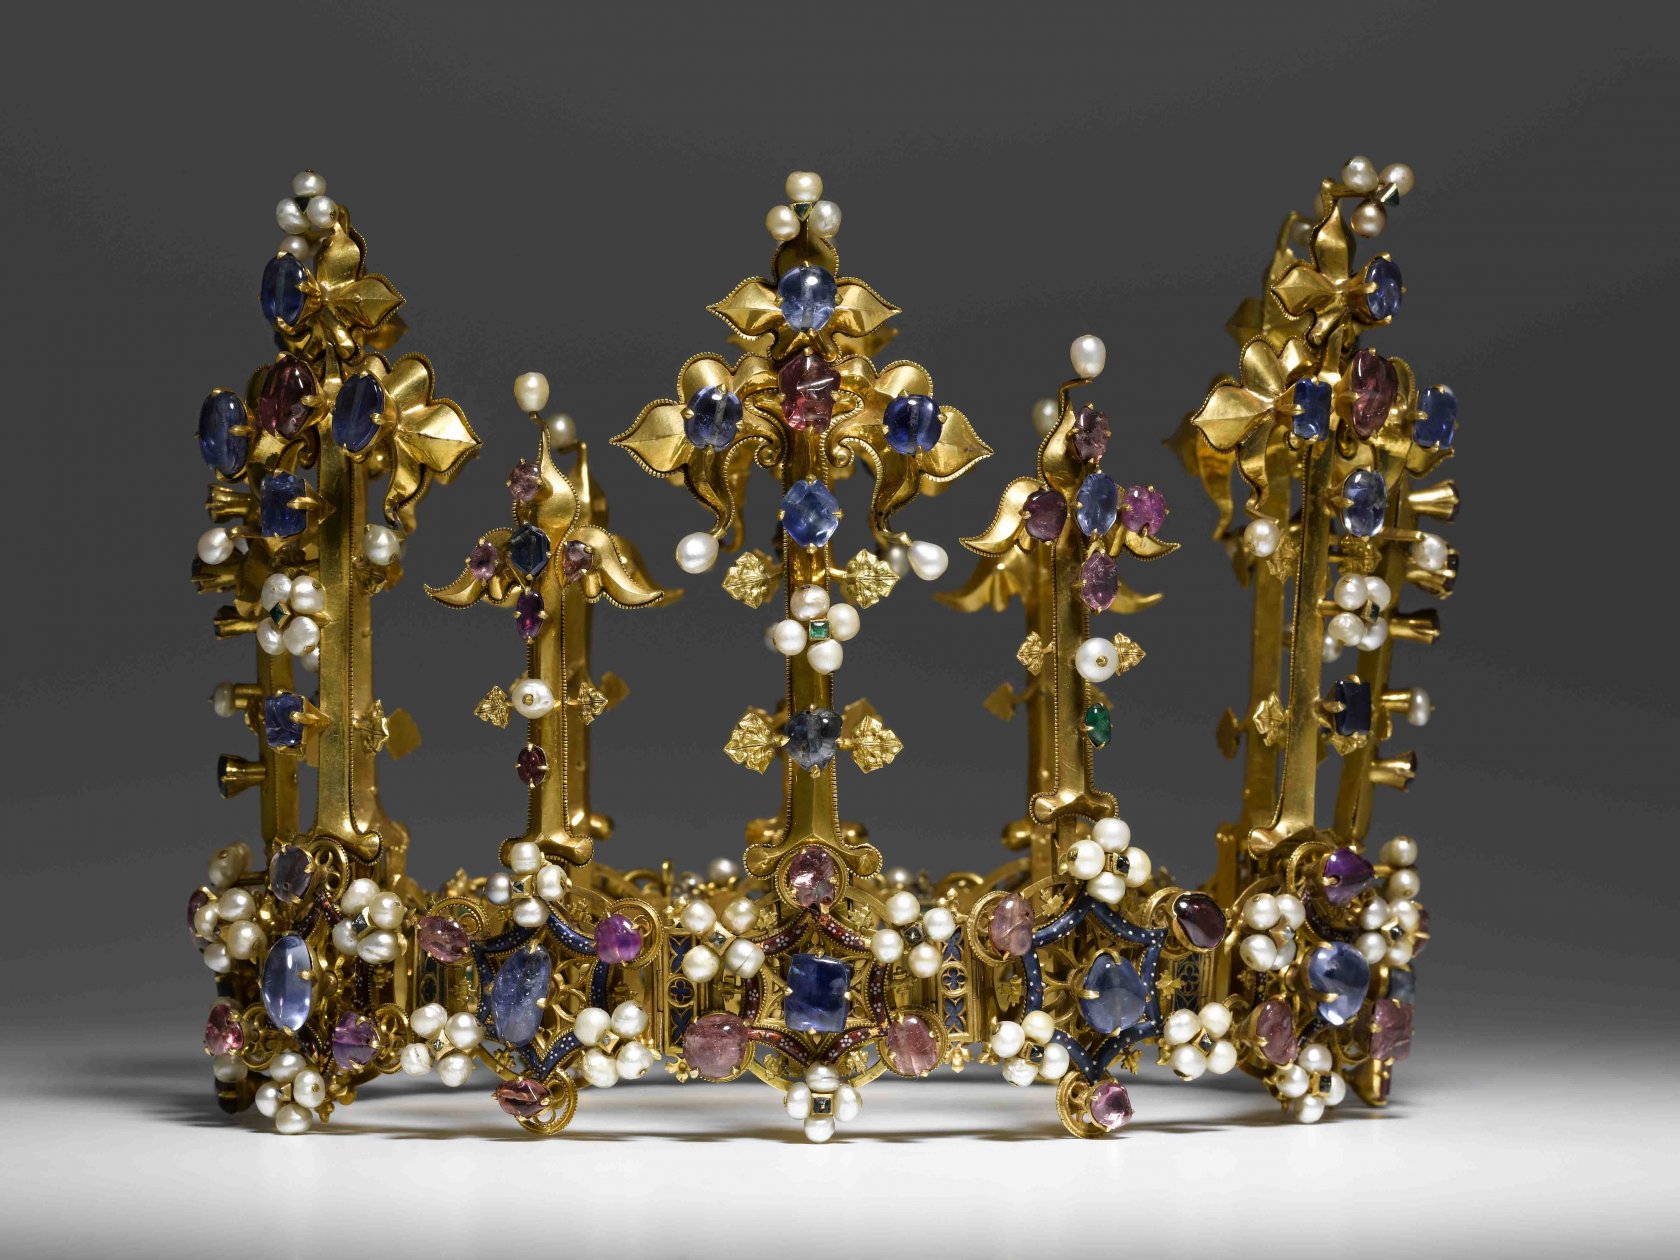 Engelse koningskroon - circa 1400